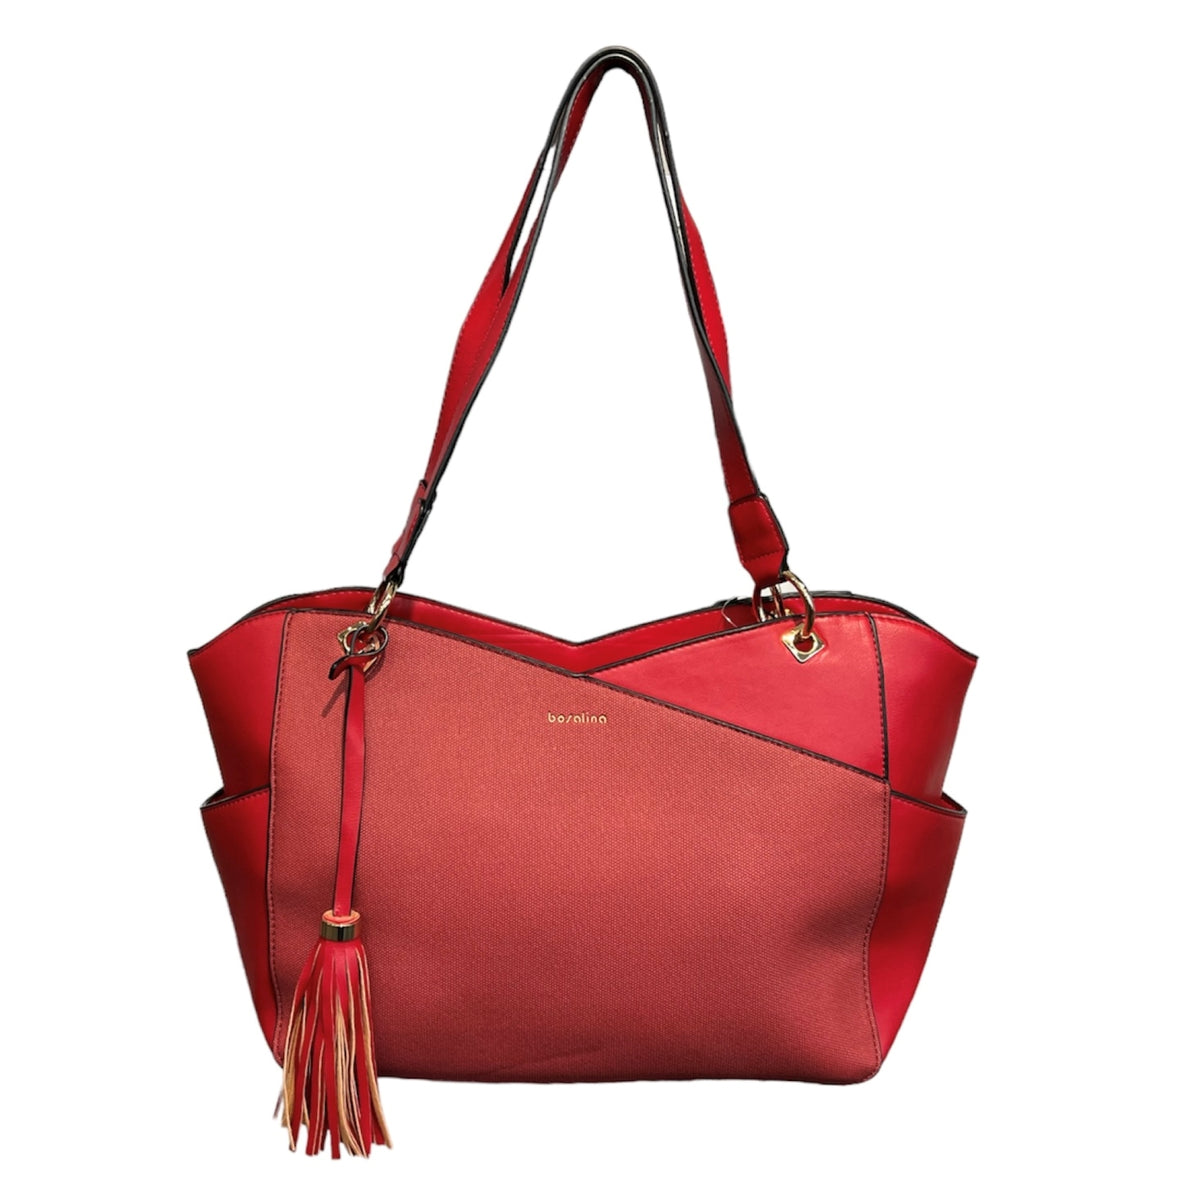 Ce sac femme en couleur bourgogne de la marque BOSALINA est un compagnon idéal pour toutes vos sorties. Avec ses nombreuses poches, ce sac à main vous permet de garder tous vos essentiels à portée de main. Son design élégant et intemporel ajoutera une touche de style à n'importe quelle tenue.